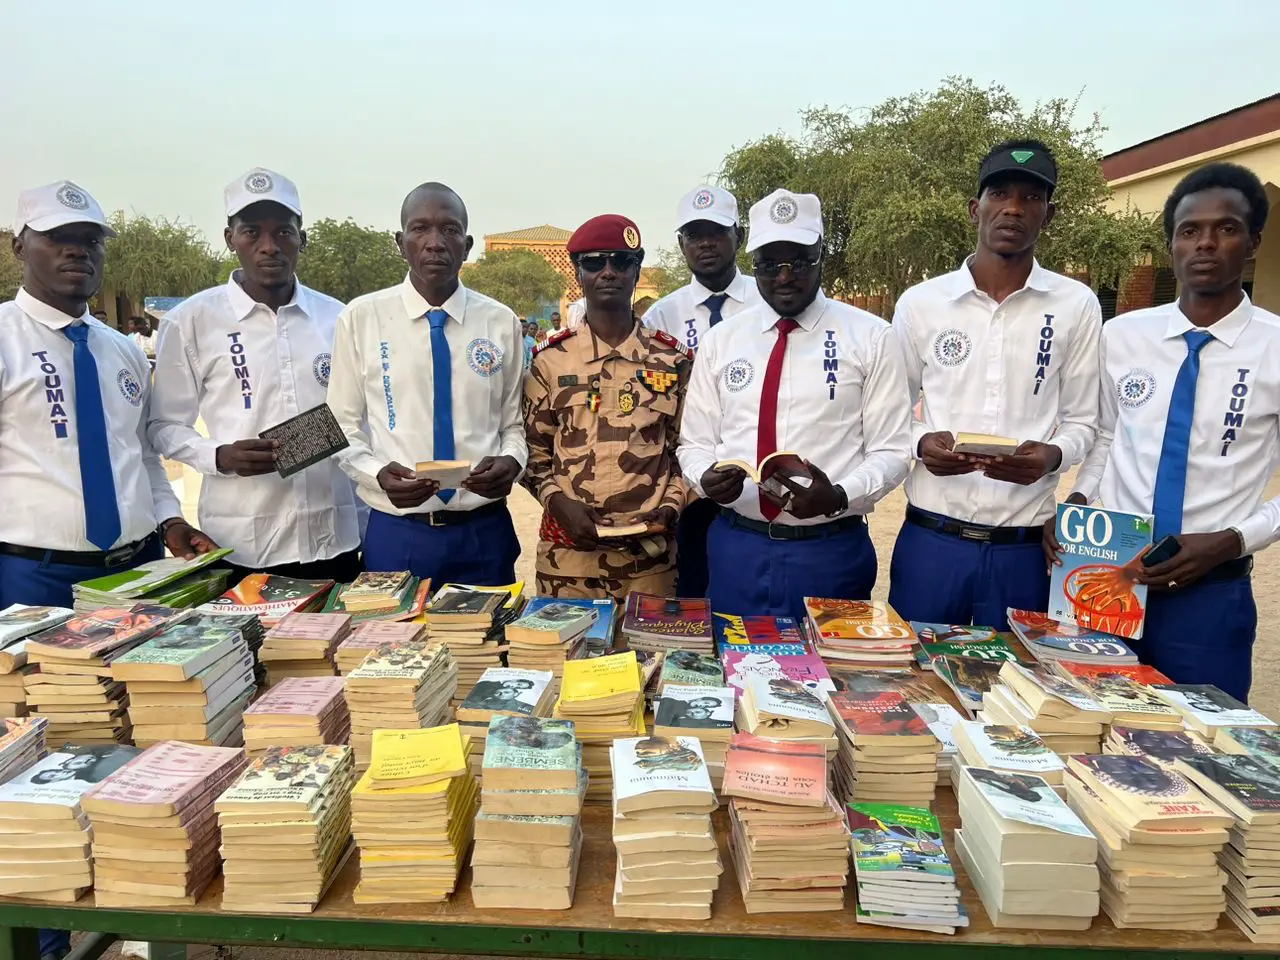 Tchad : 500 livres distribués aux établissements d’Abéché pour soutenir l’éducation